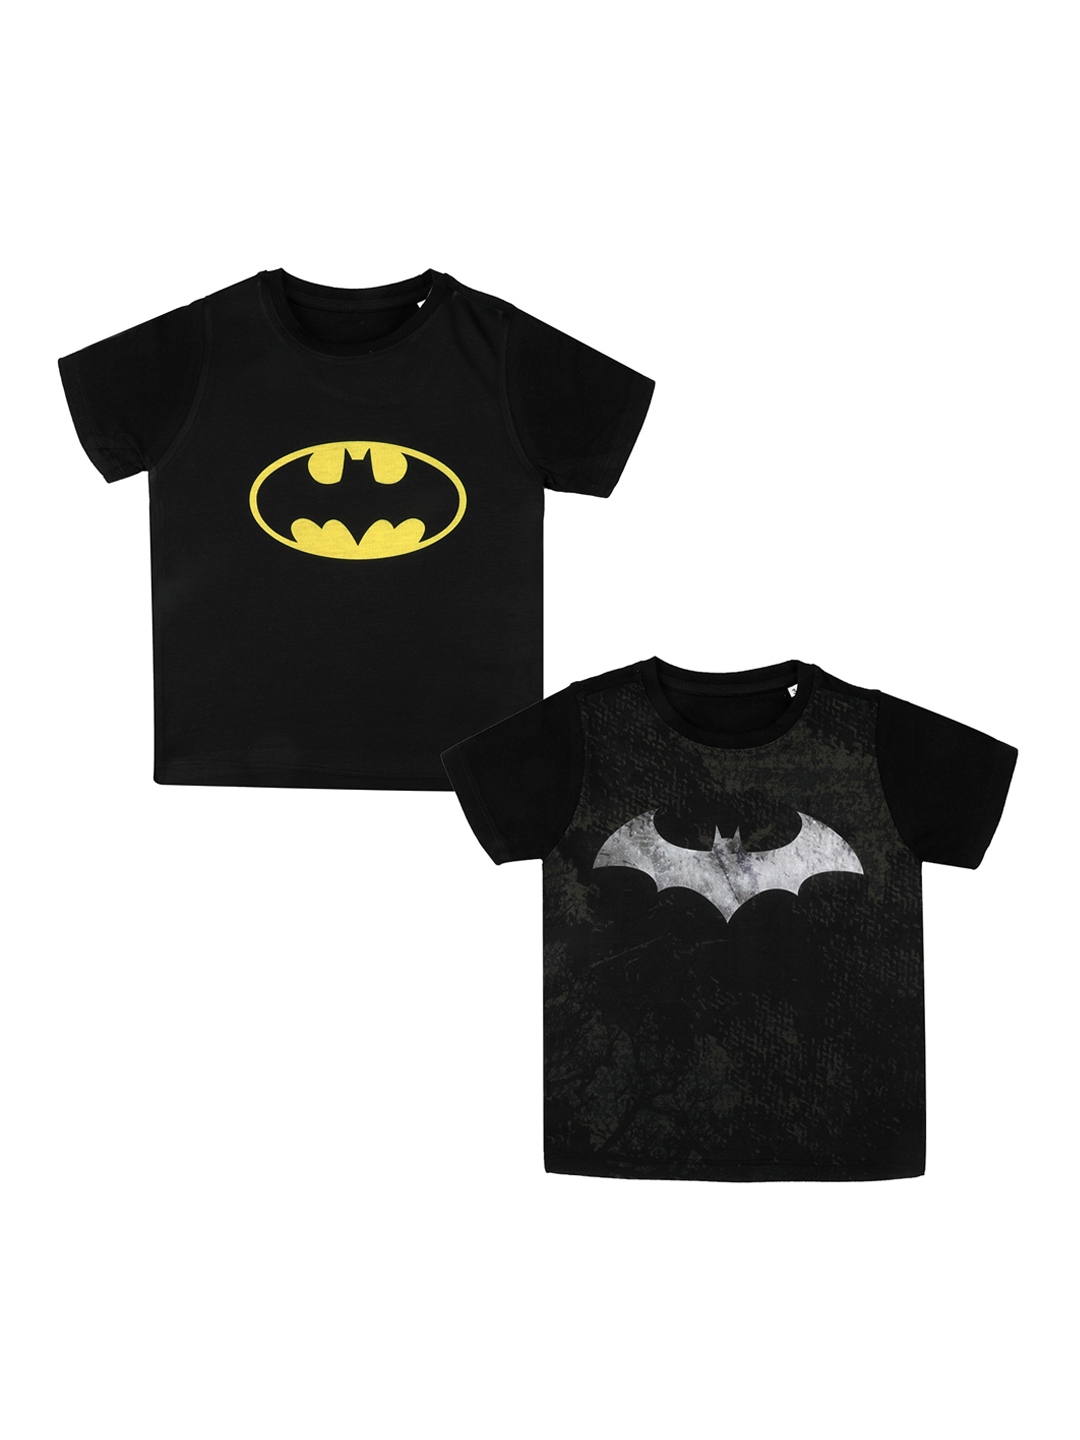 Buy Batman Boys Black Batman Printed Round Neck T Shirt - Tshirts for ...